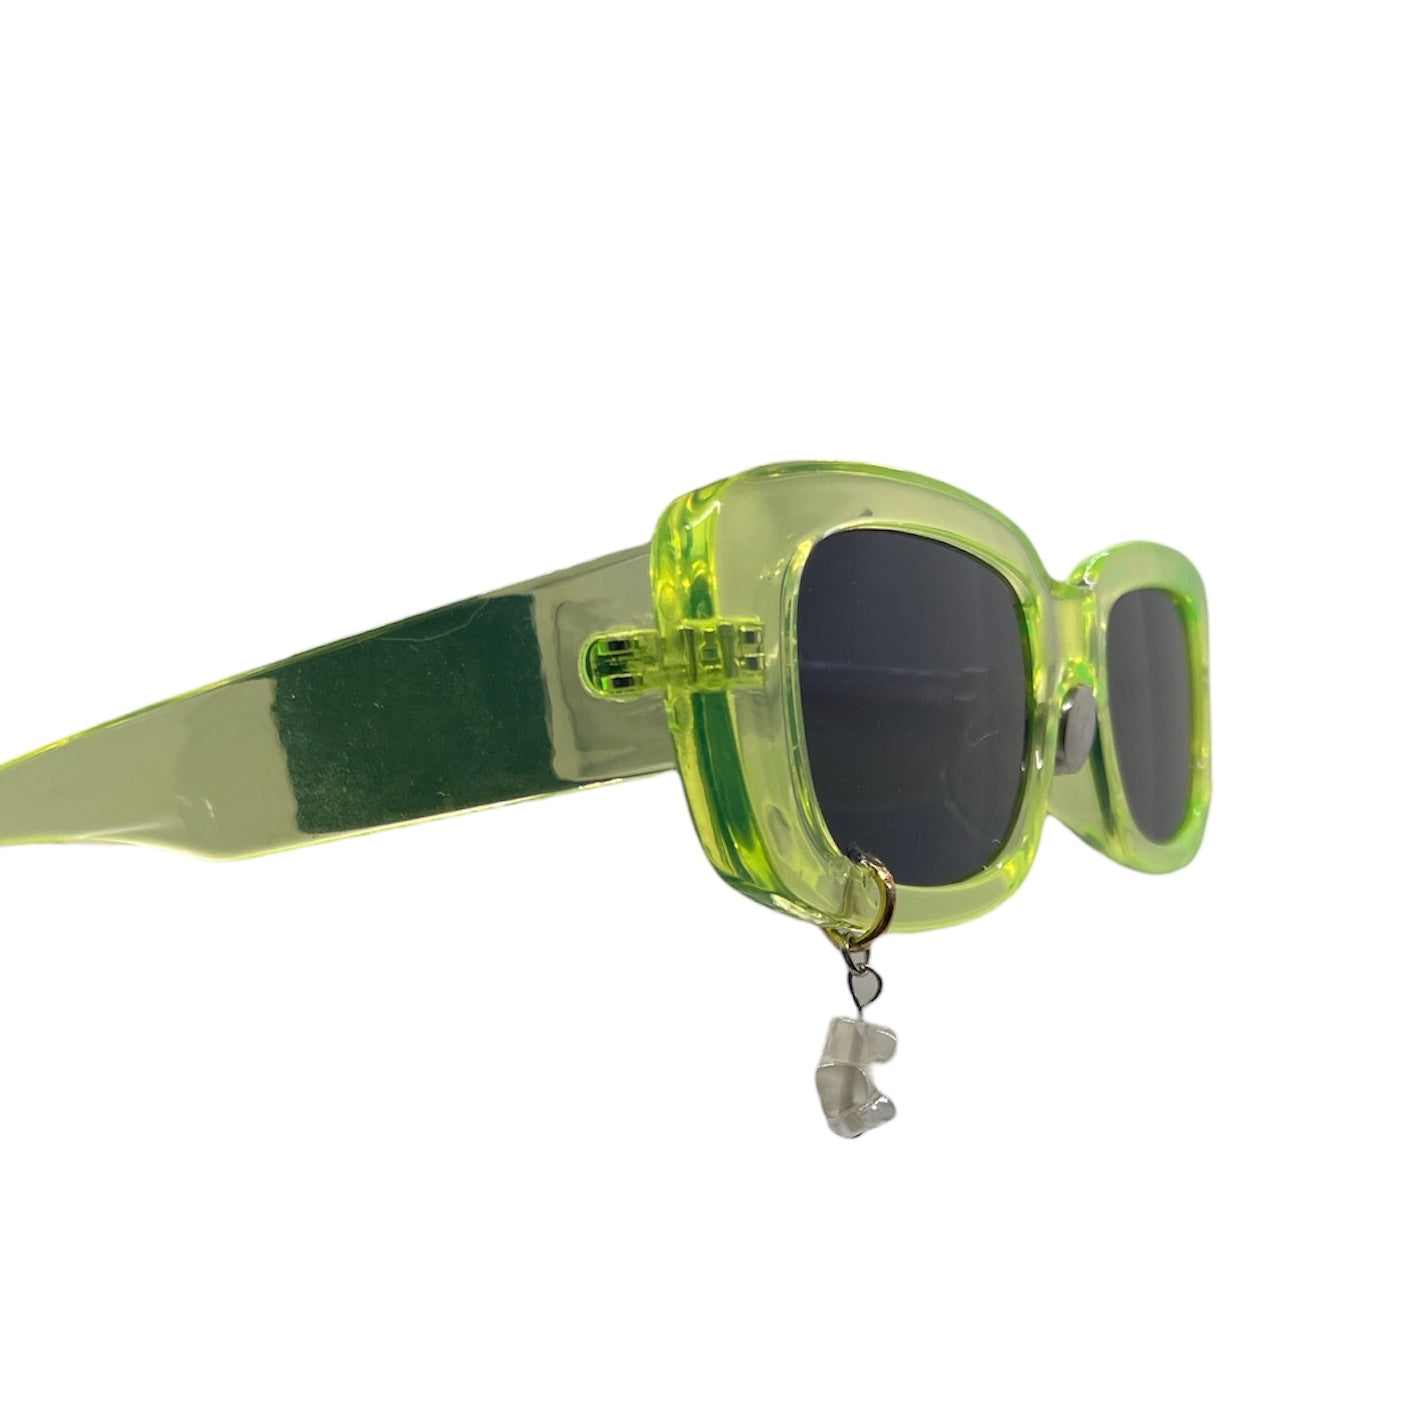 Green Stone Sunglasses (Non-Polarized)